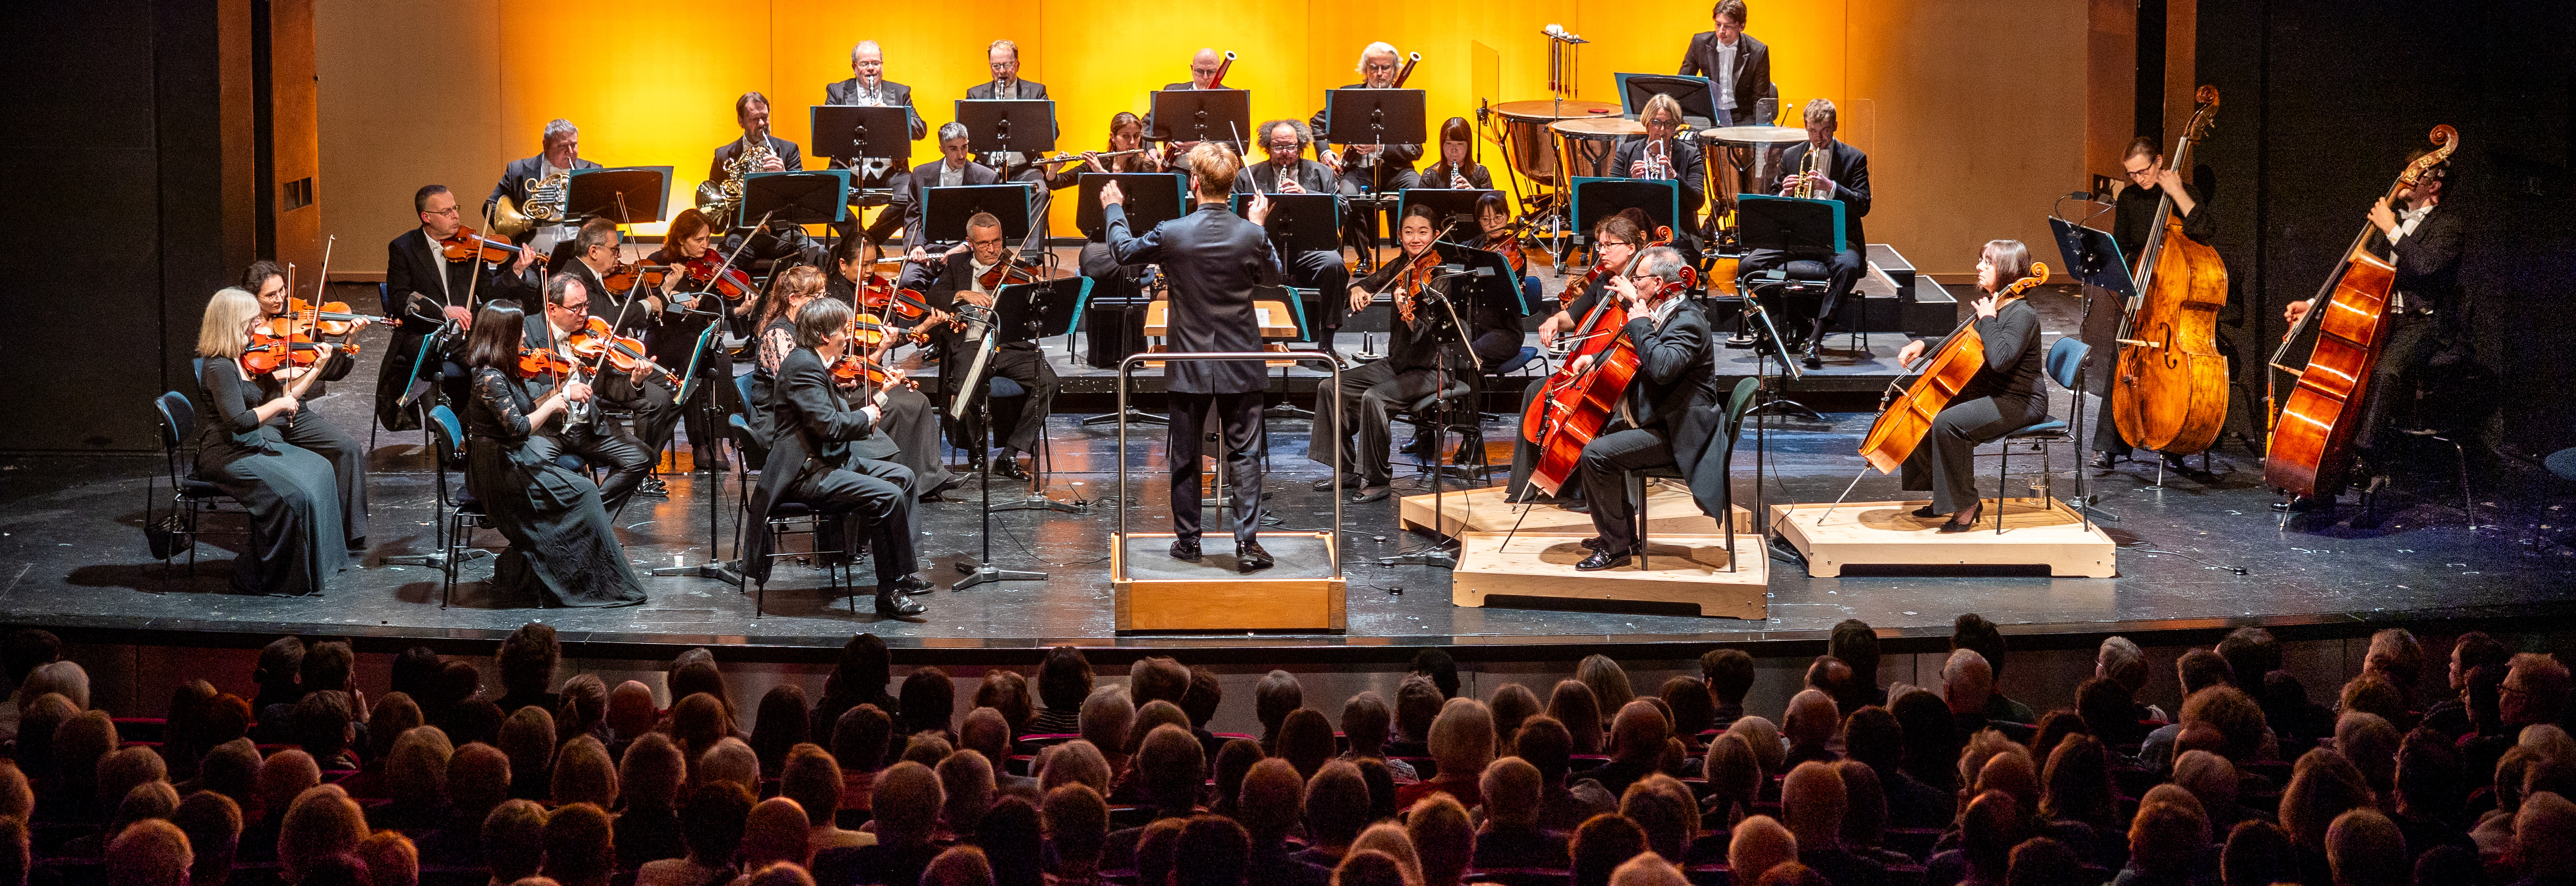 Die Lüneburger Symphoniker bei einem Konzert im Theater Lüneburg vor einem vollen Publikum